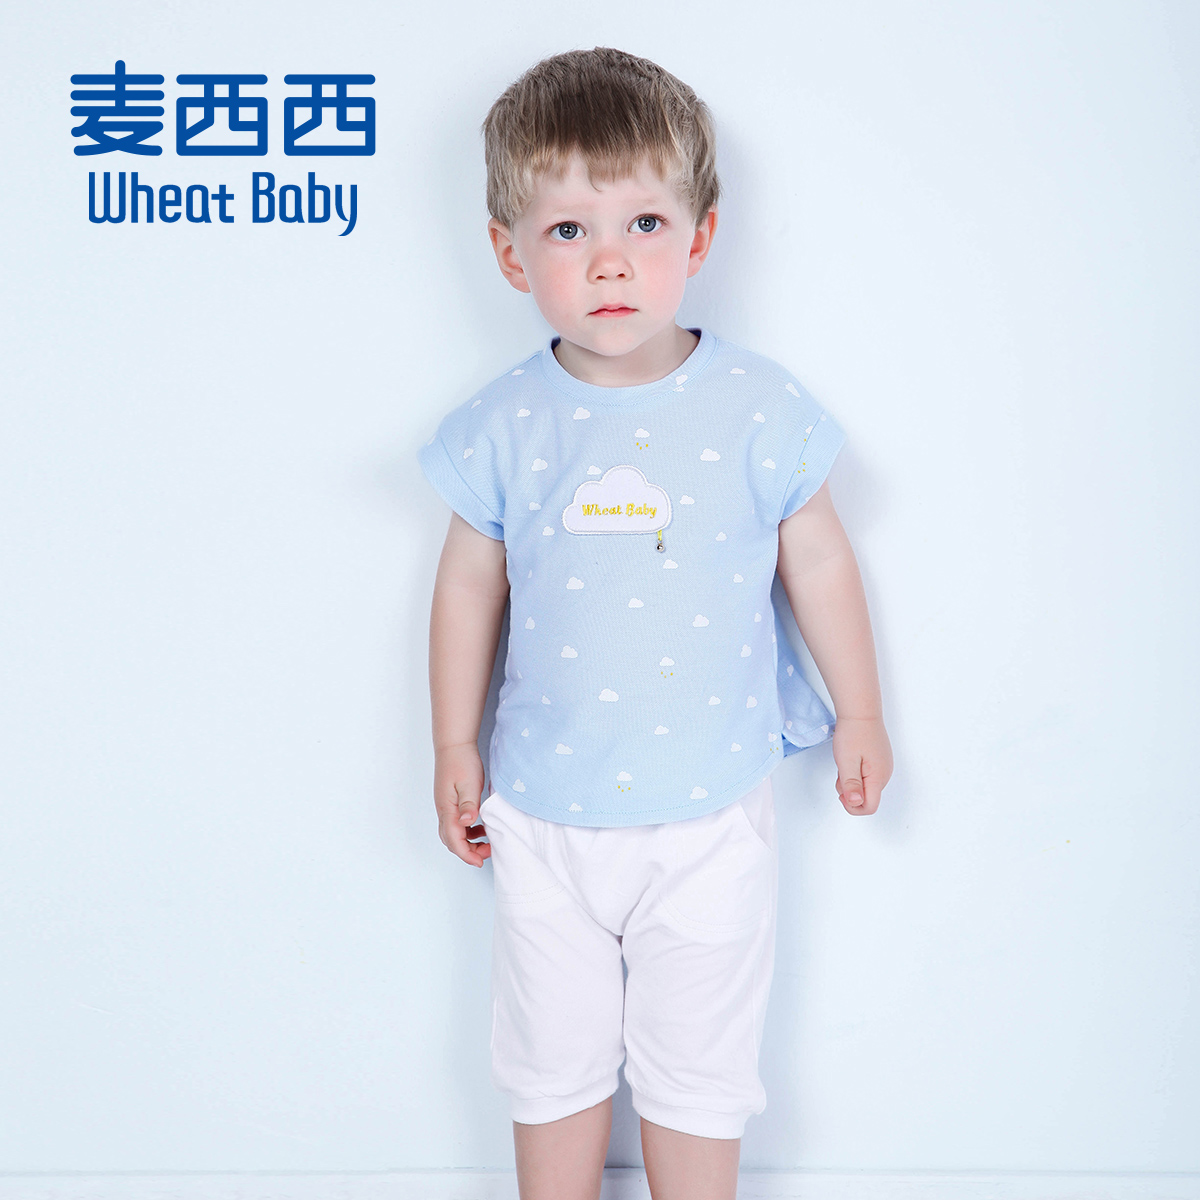 wheatbaby 麦西西男童 男婴童印花短袖哈伦裤套装 2015夏装新款